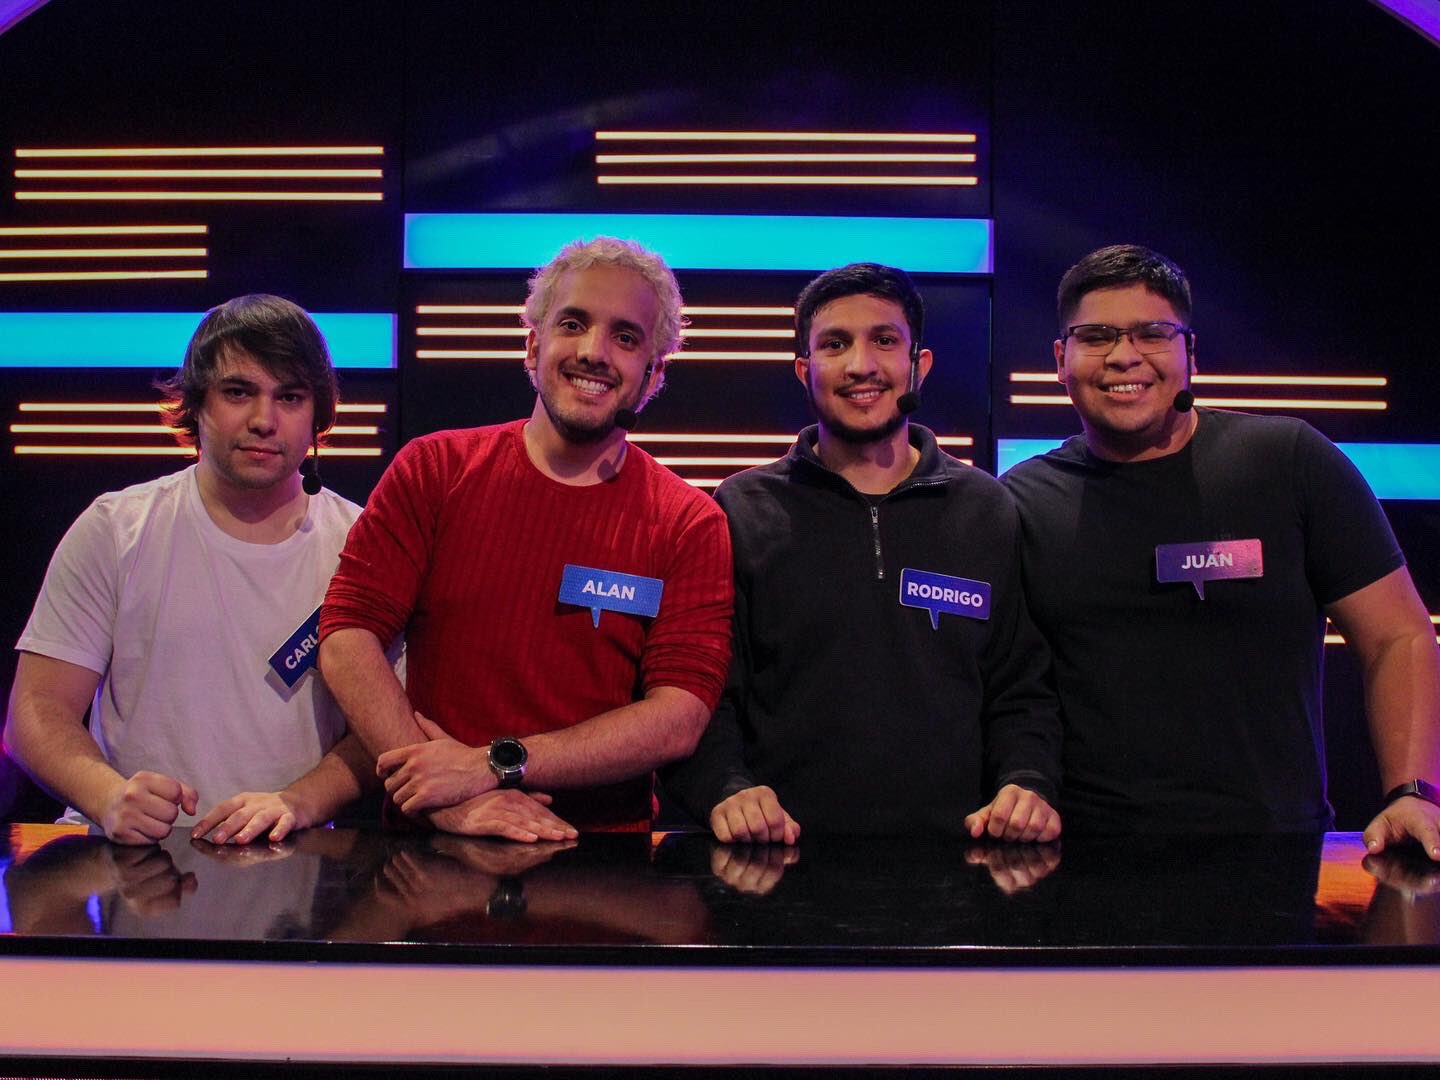 El equipo de “Los Borbotones” liderado por Juan e integrado además por Rodrigo, Alan y Carlos. Foto: 